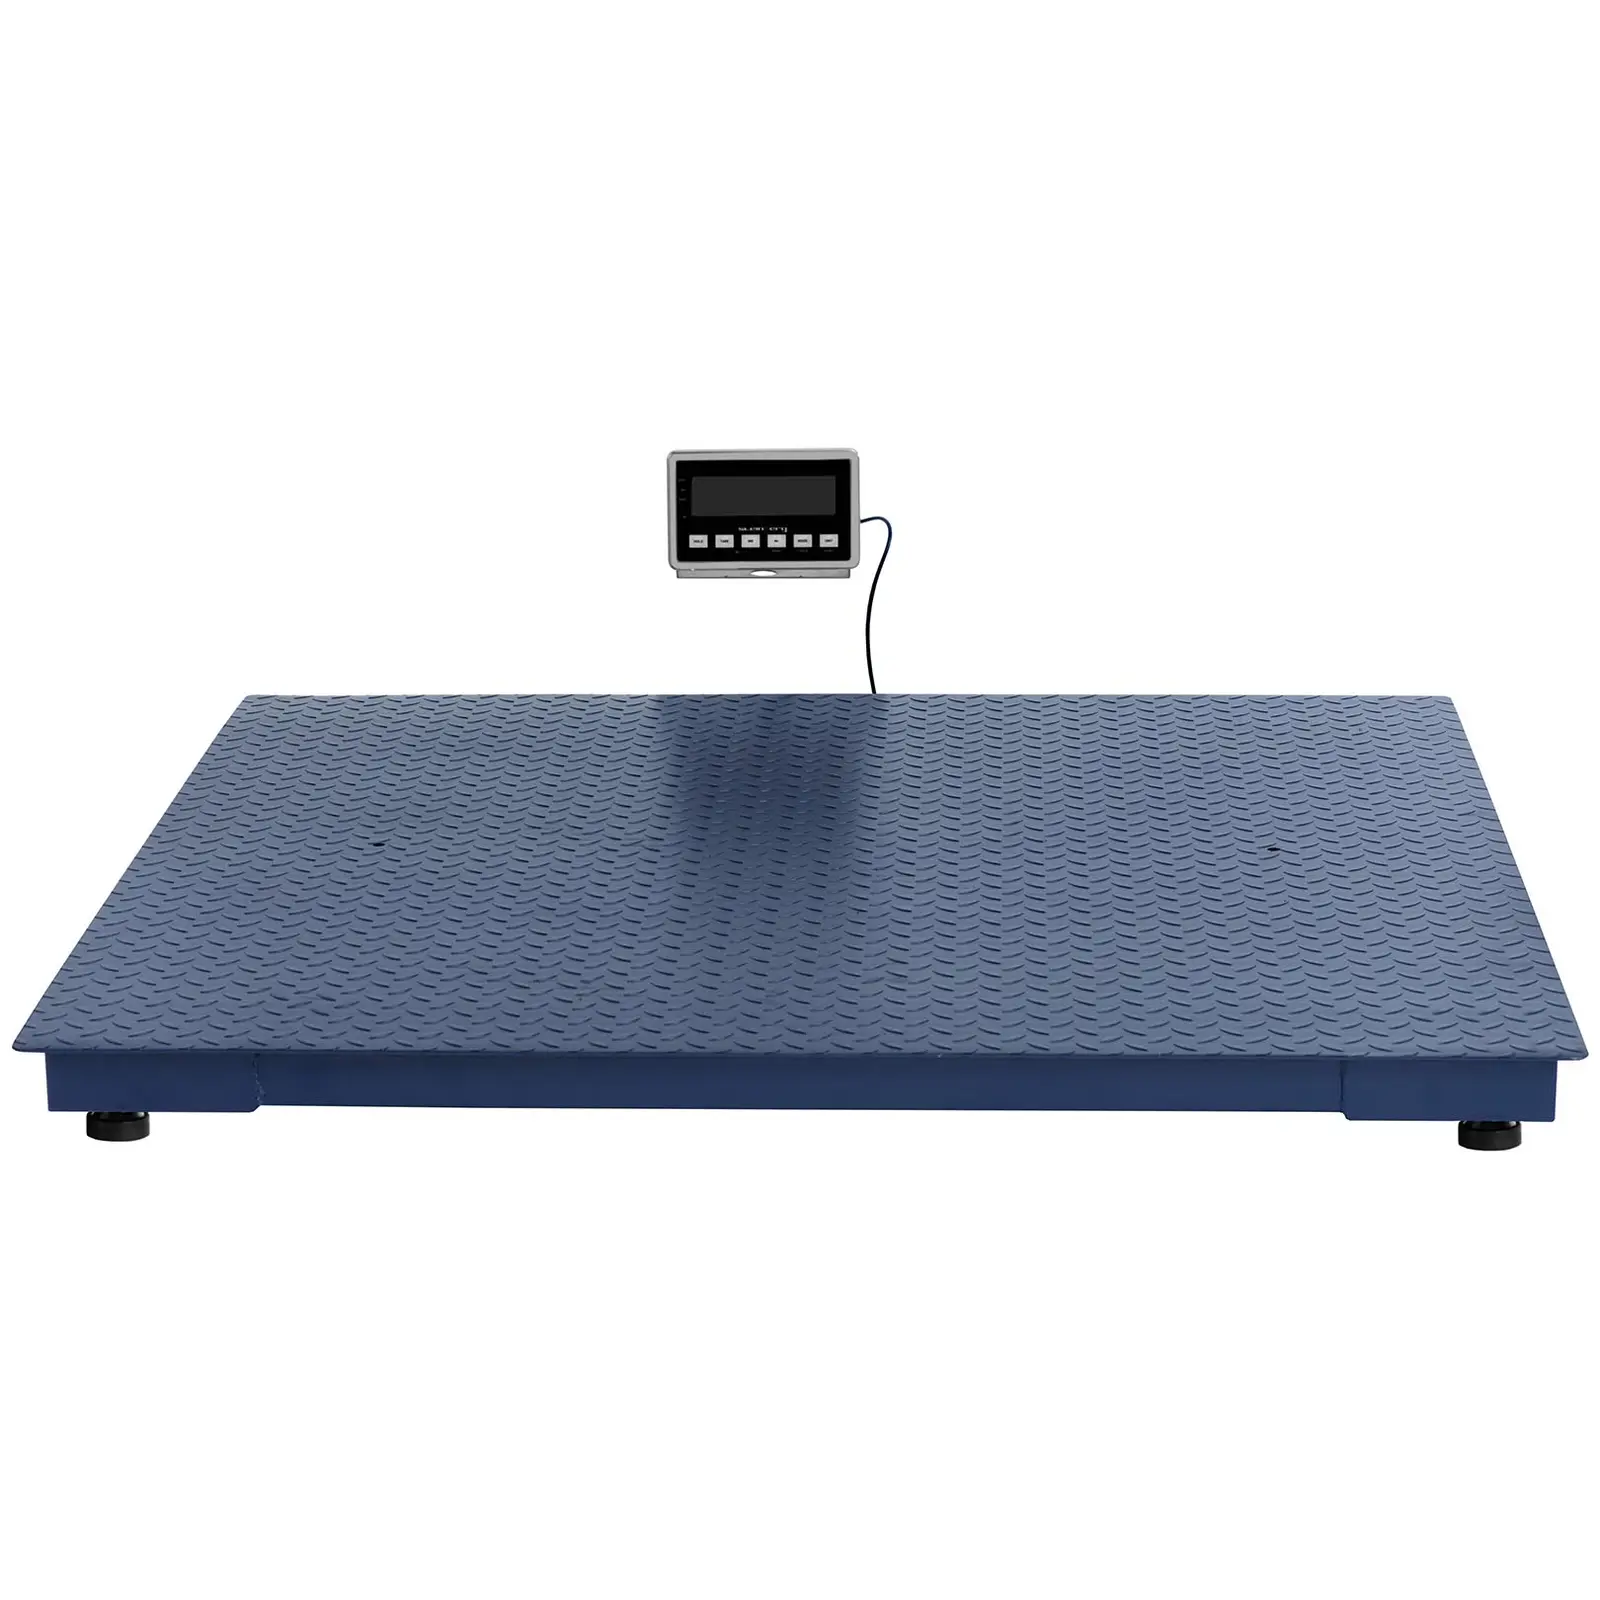 Bilancia da pavimento - 3000 kg / 1 kg - 1500 x 1500 mm - LCD